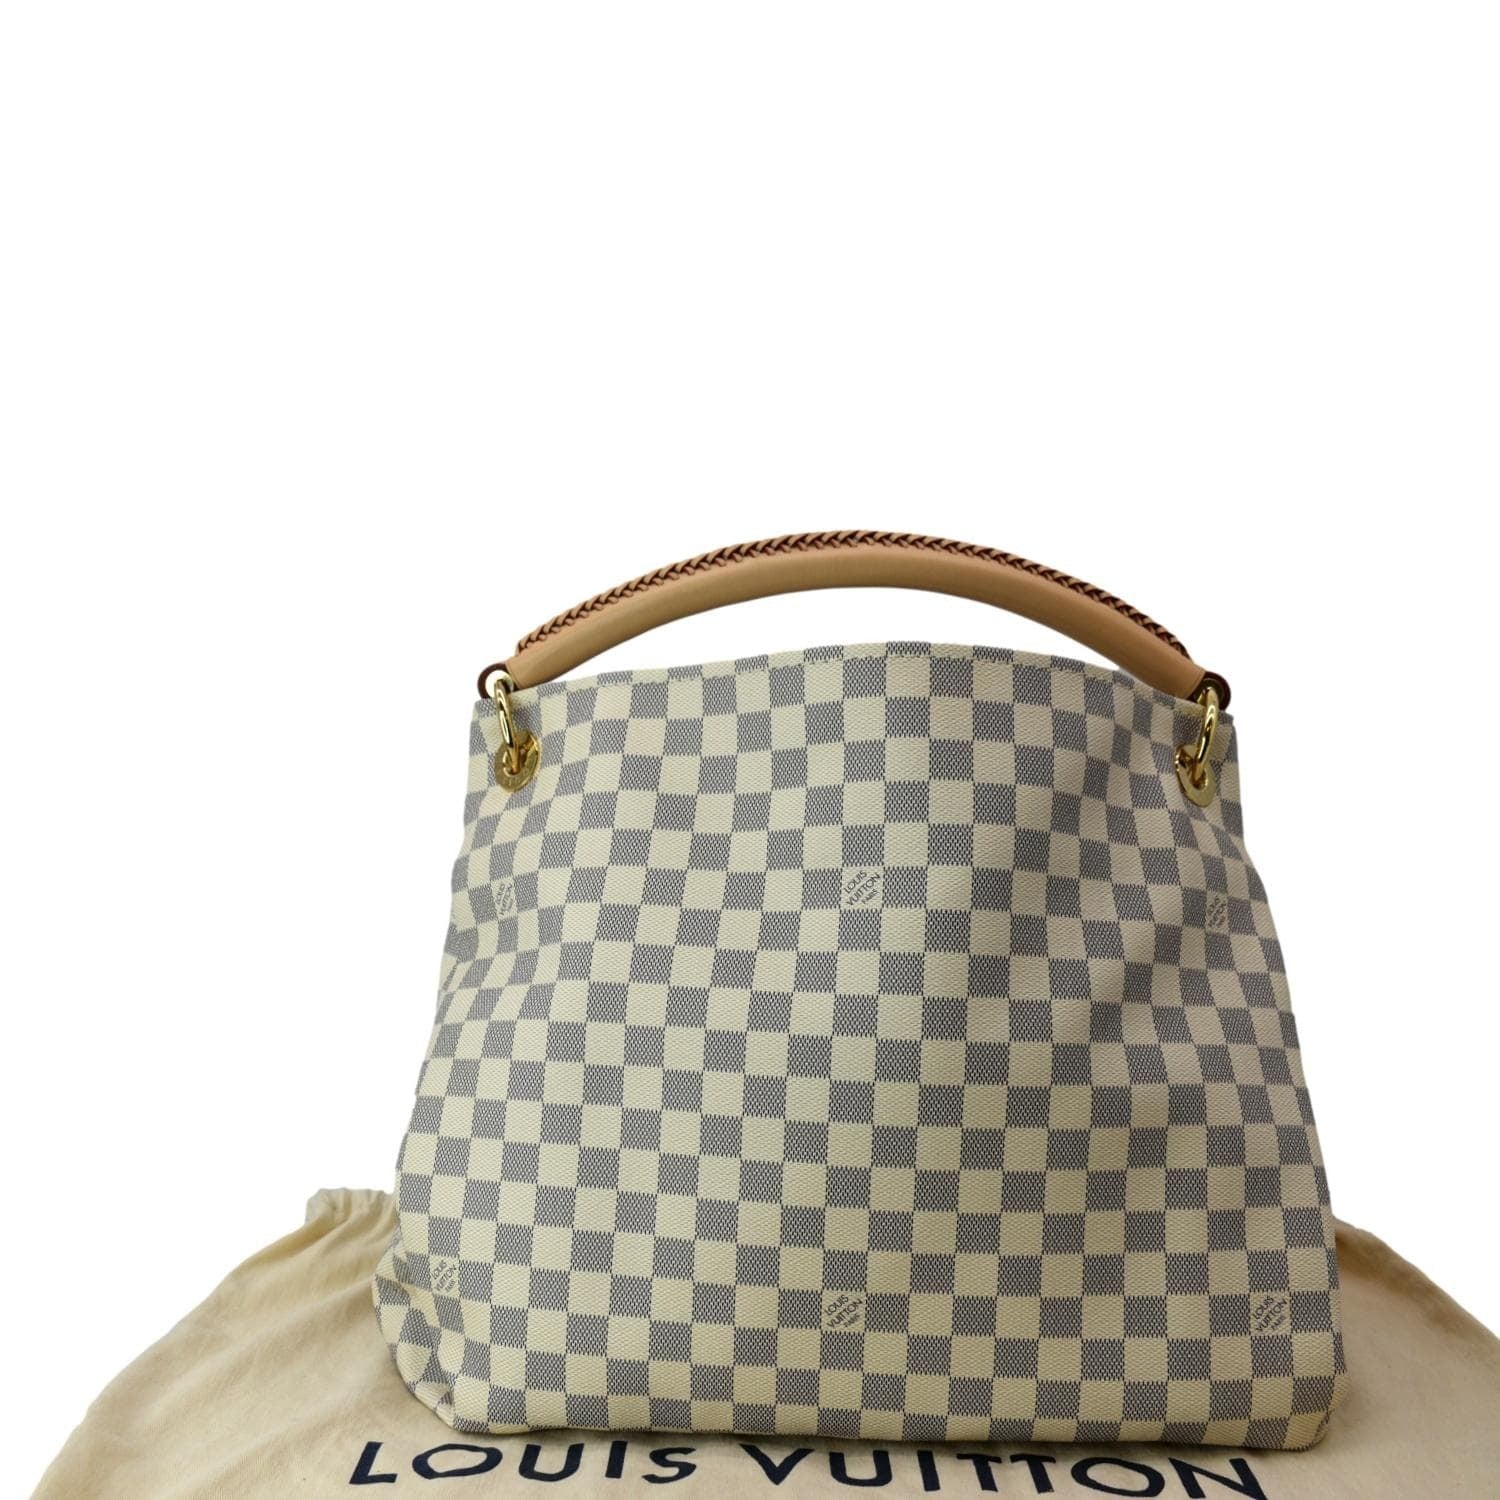 Louis Vuitton Damier Azur Artsy